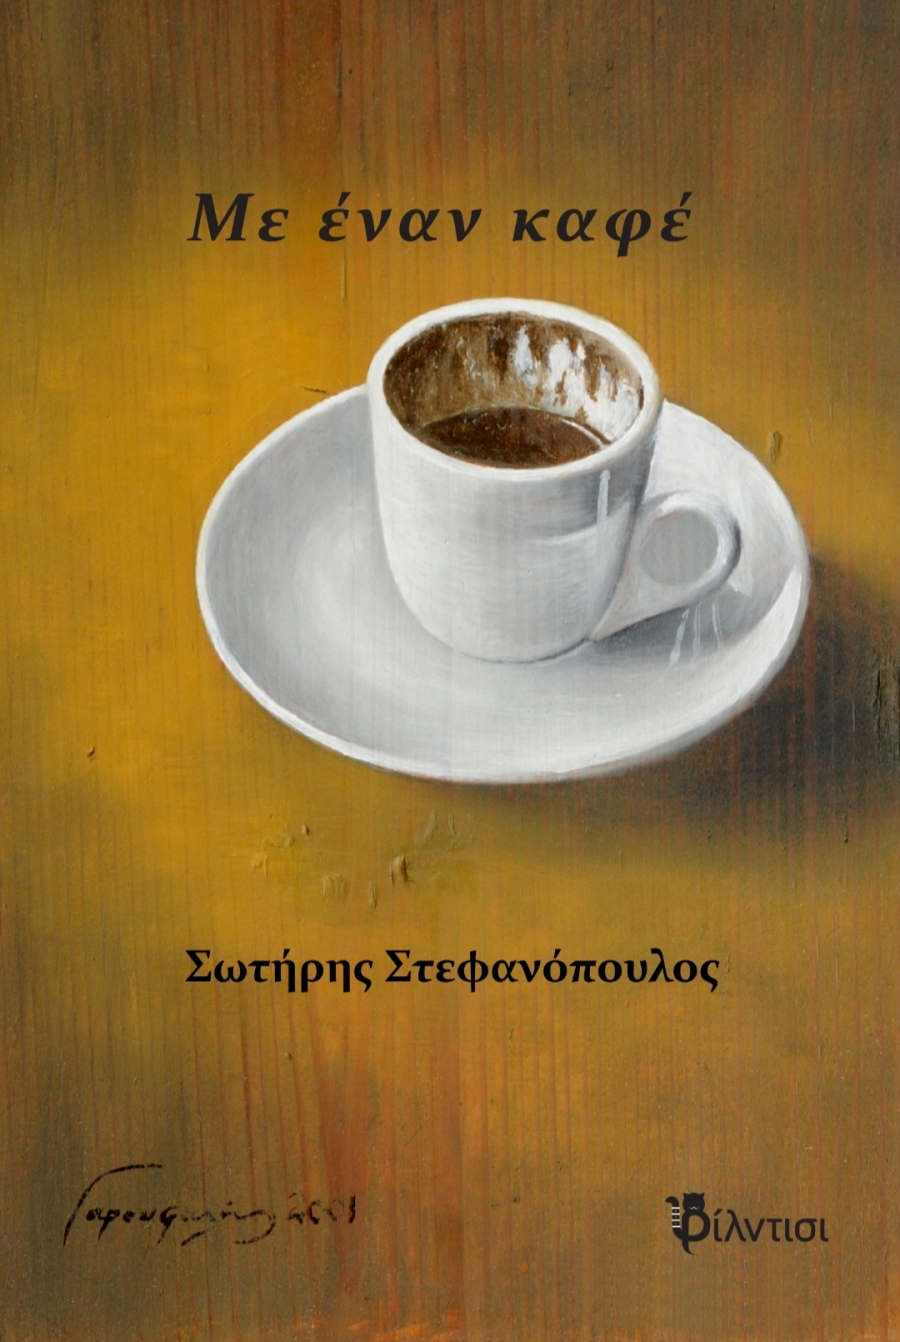 Βιβλίο: Με έναν καφέ του Σωτήρη Στεφανόπουλου